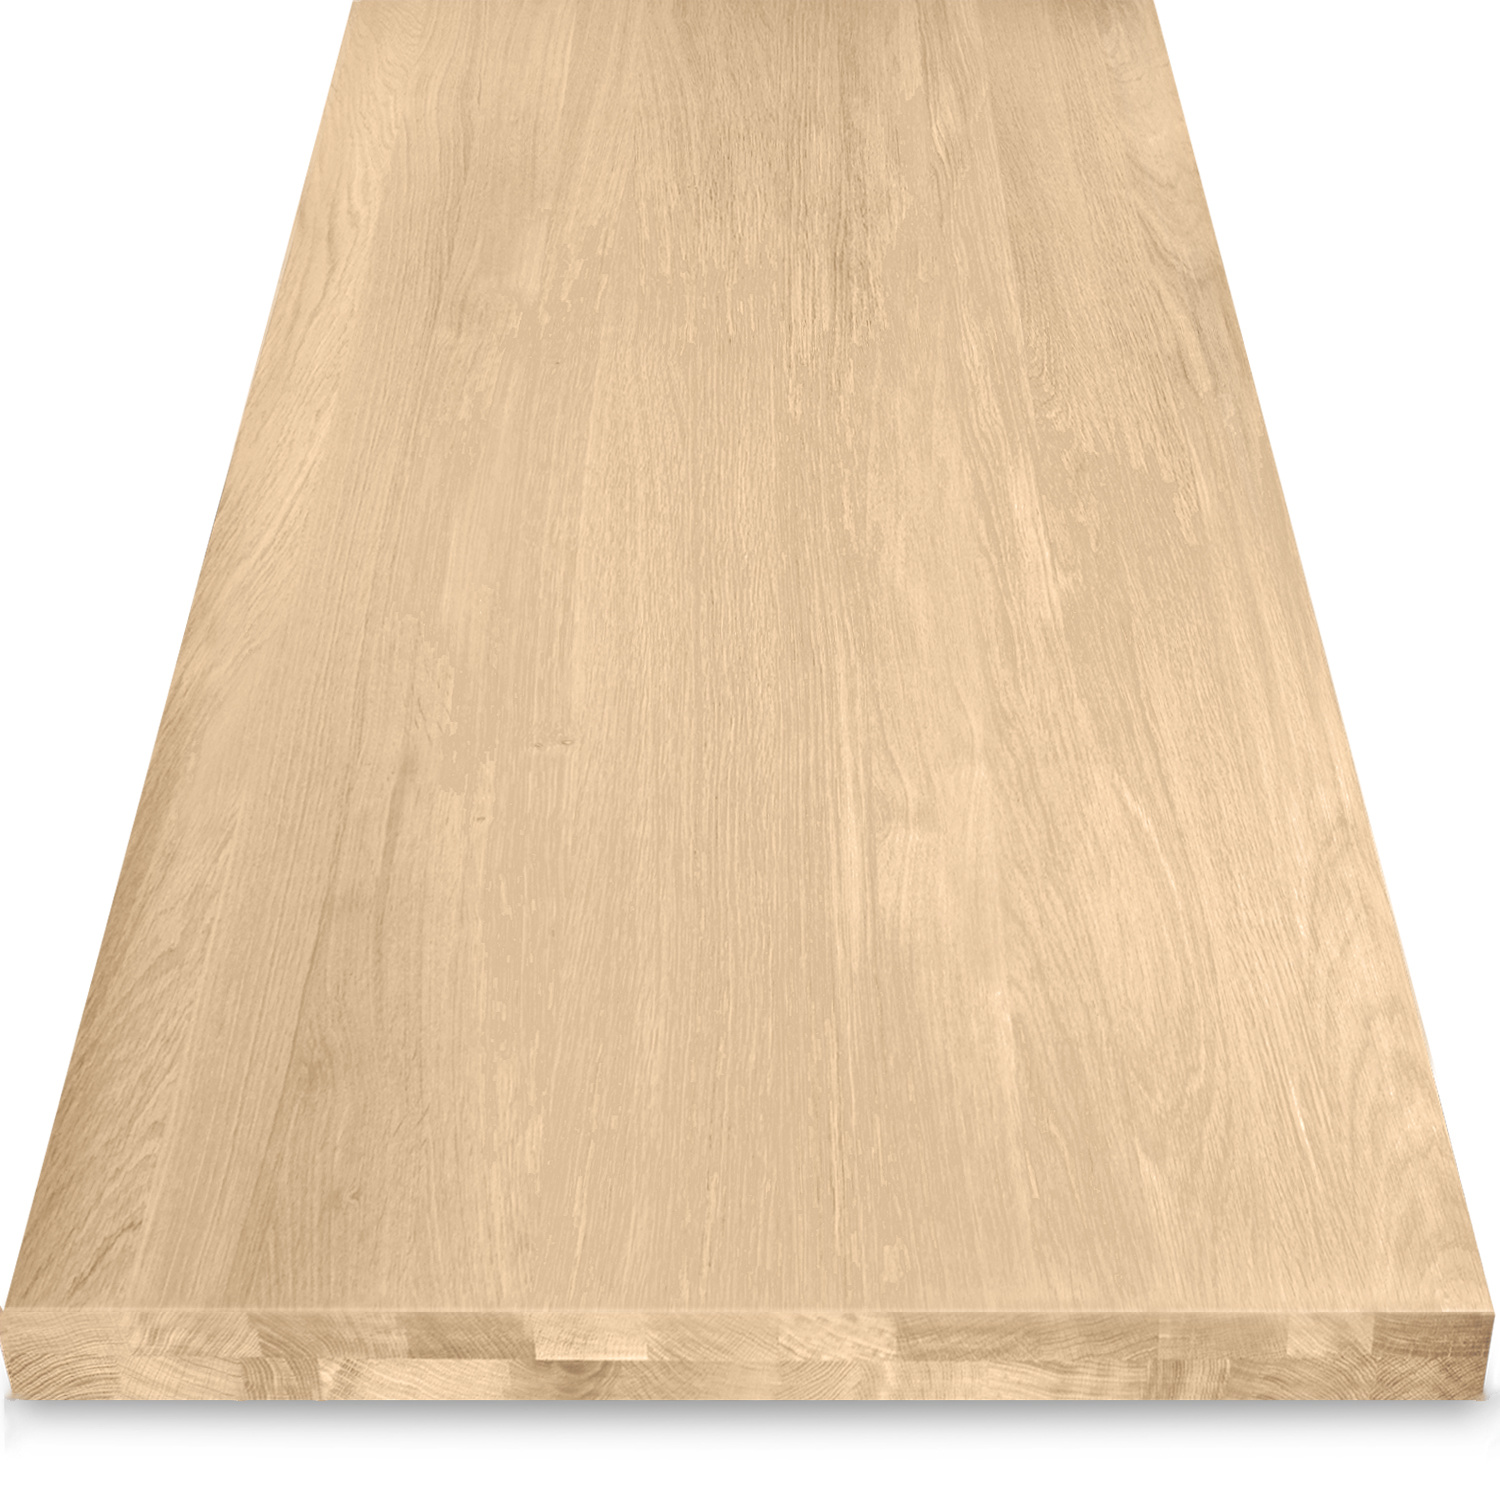  Eiken tafelblad op maat - OPGEDIKT - 4,6 cm dik (2-laags rondom) - foutvrij Europees eikenhout - verlijmd kd 8-12% - 50-120x50-300 cm